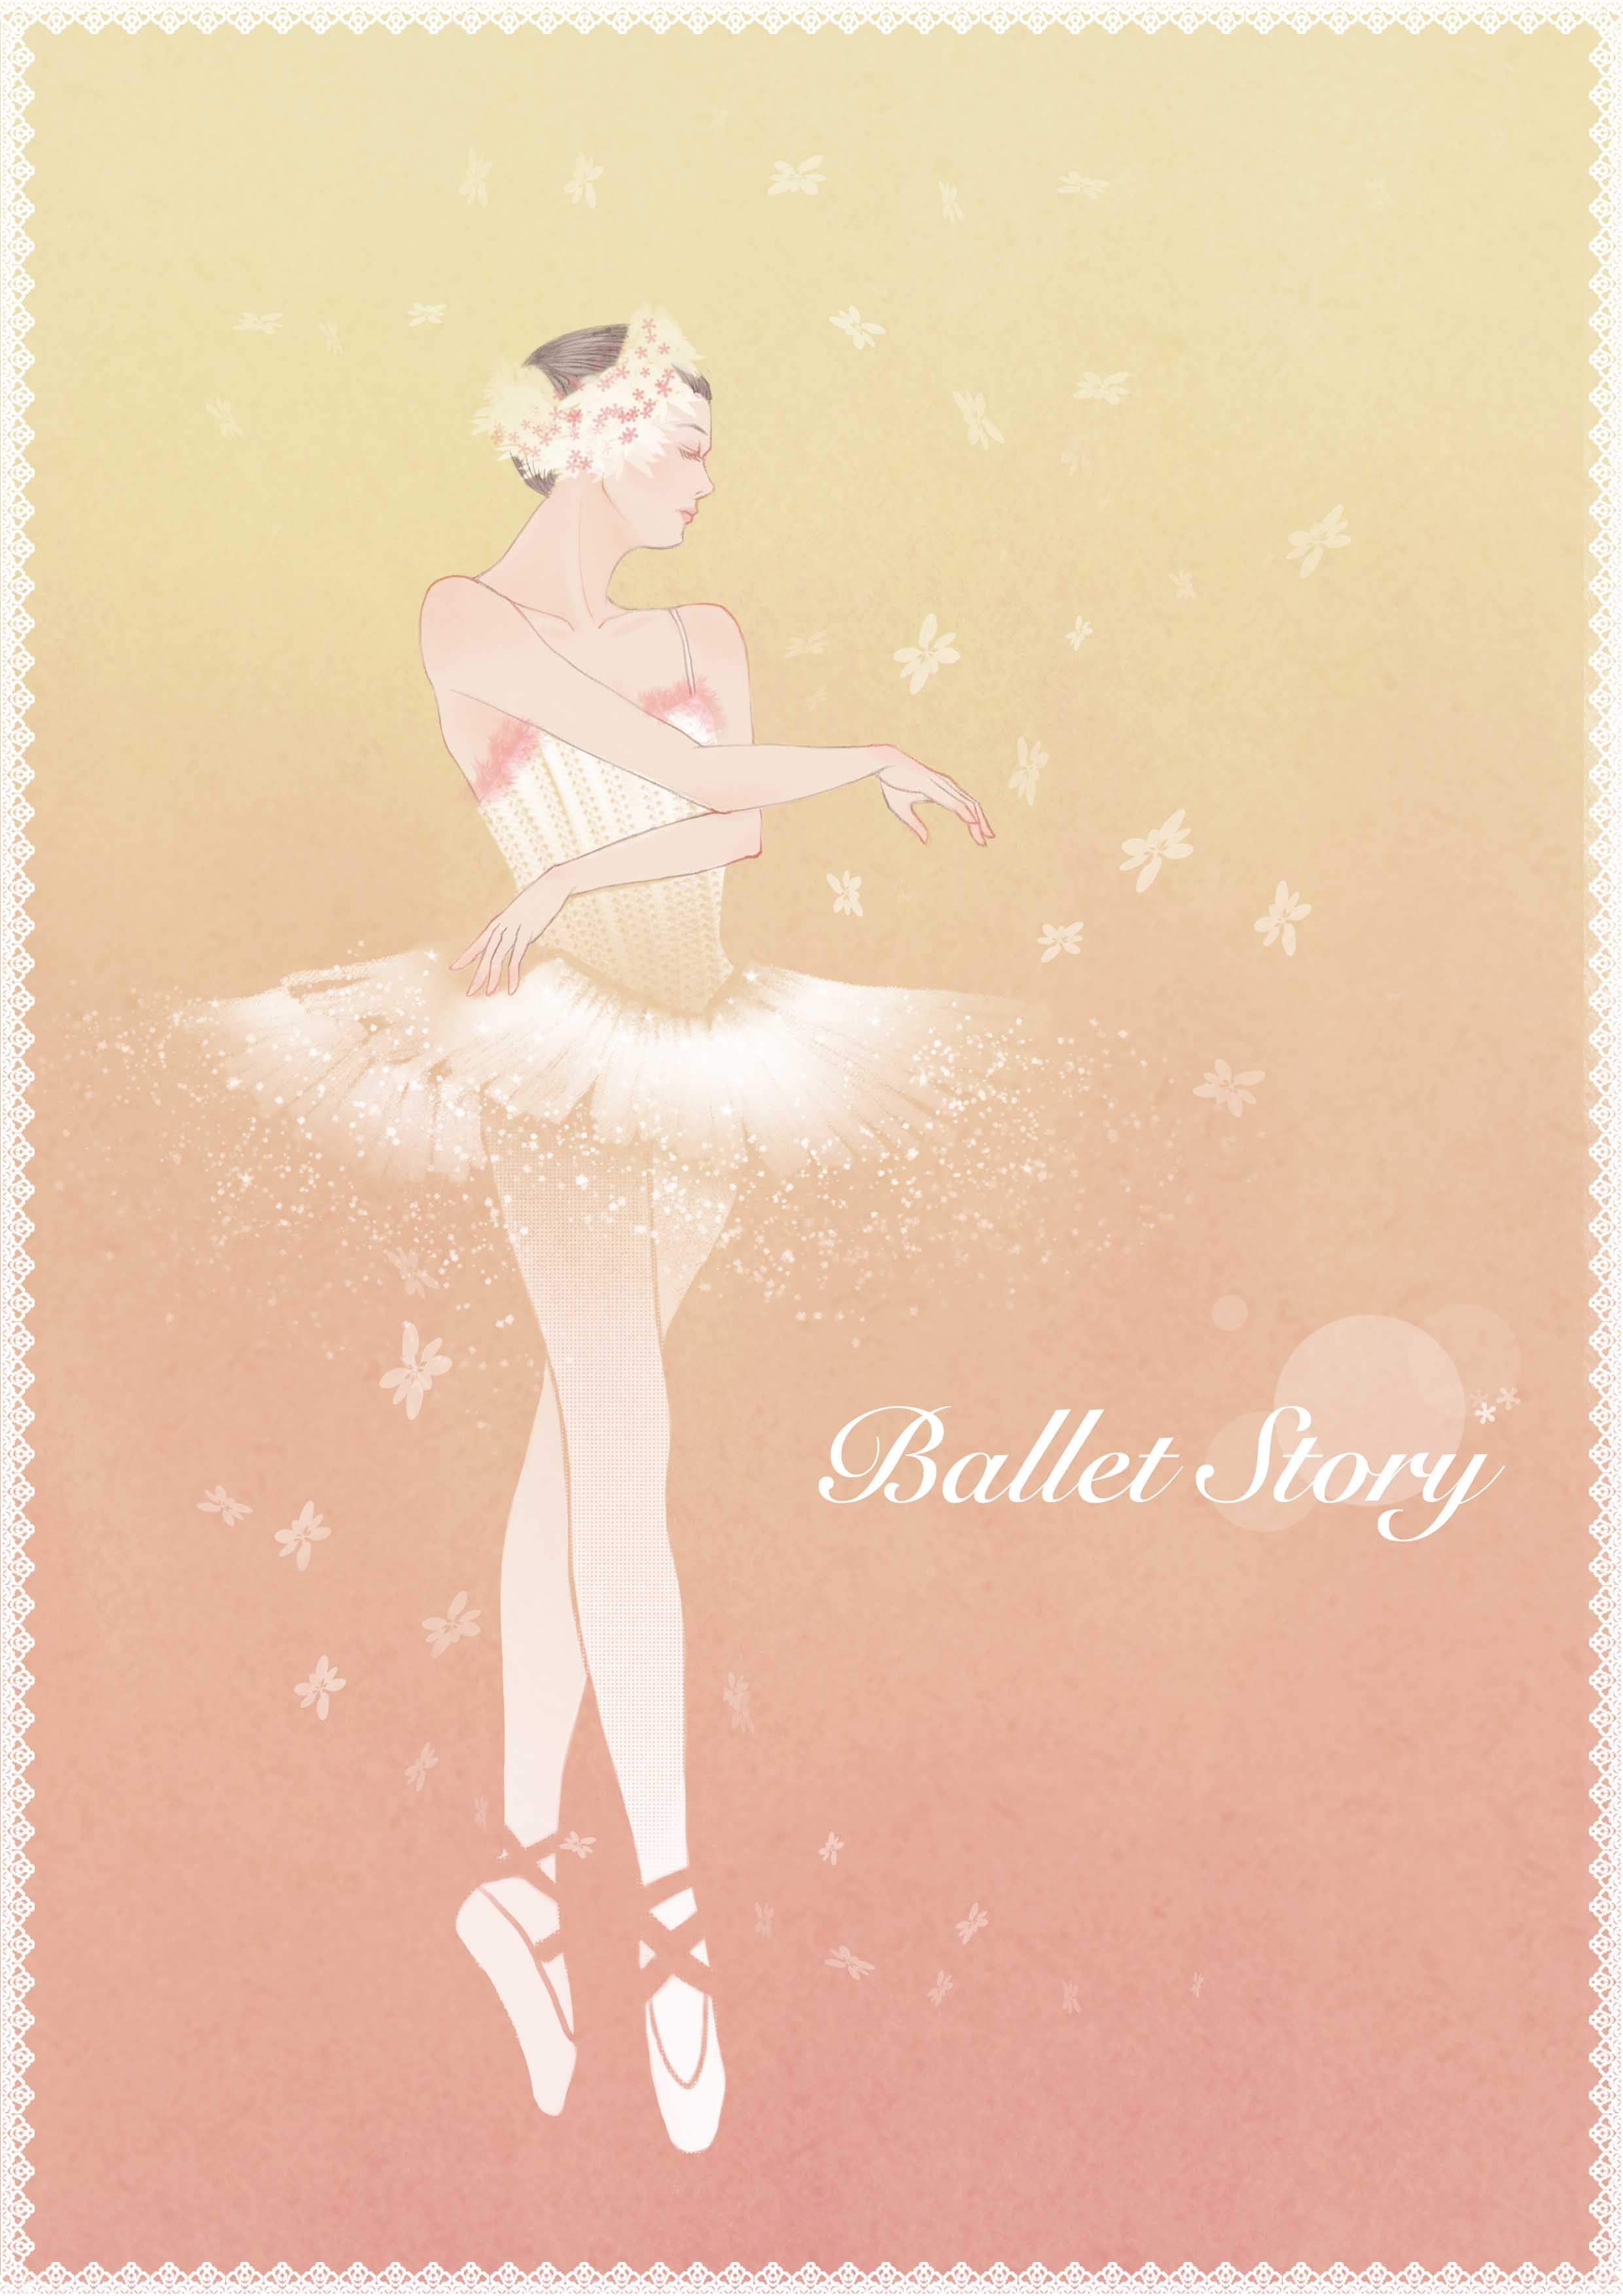 卡通跳芭蕾舞的女孩图片素材免费下载 - 觅知网